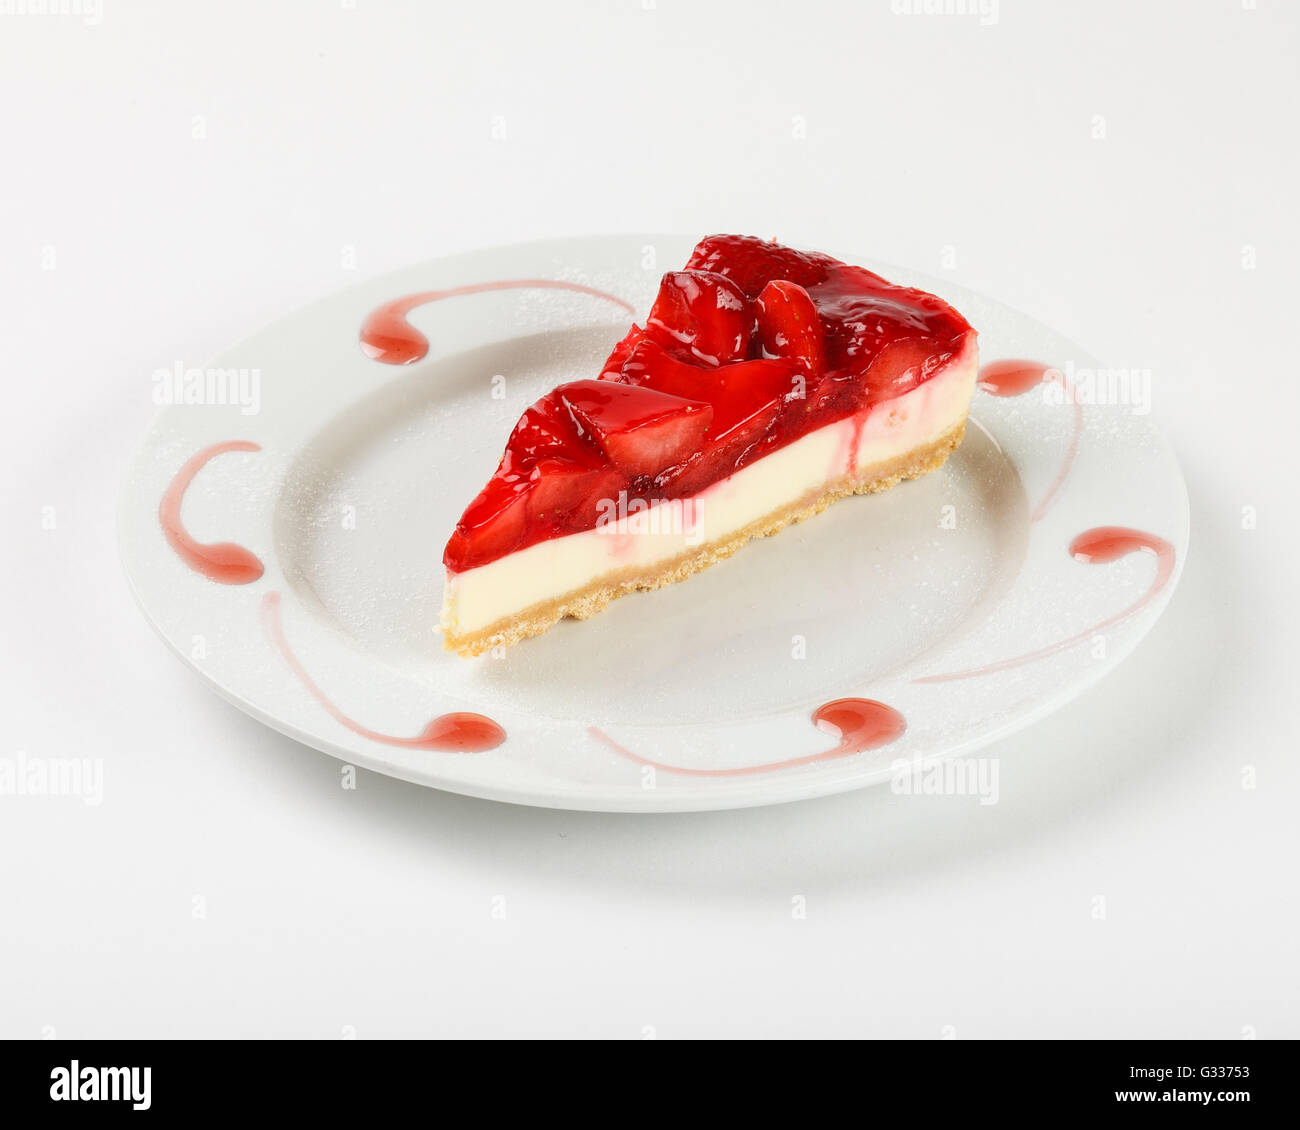 Deliciosa tarta de queso con mermelada de fresa y mermelada en la placa de fondo blanco. Cerrar la vista lateral. Foto de stock